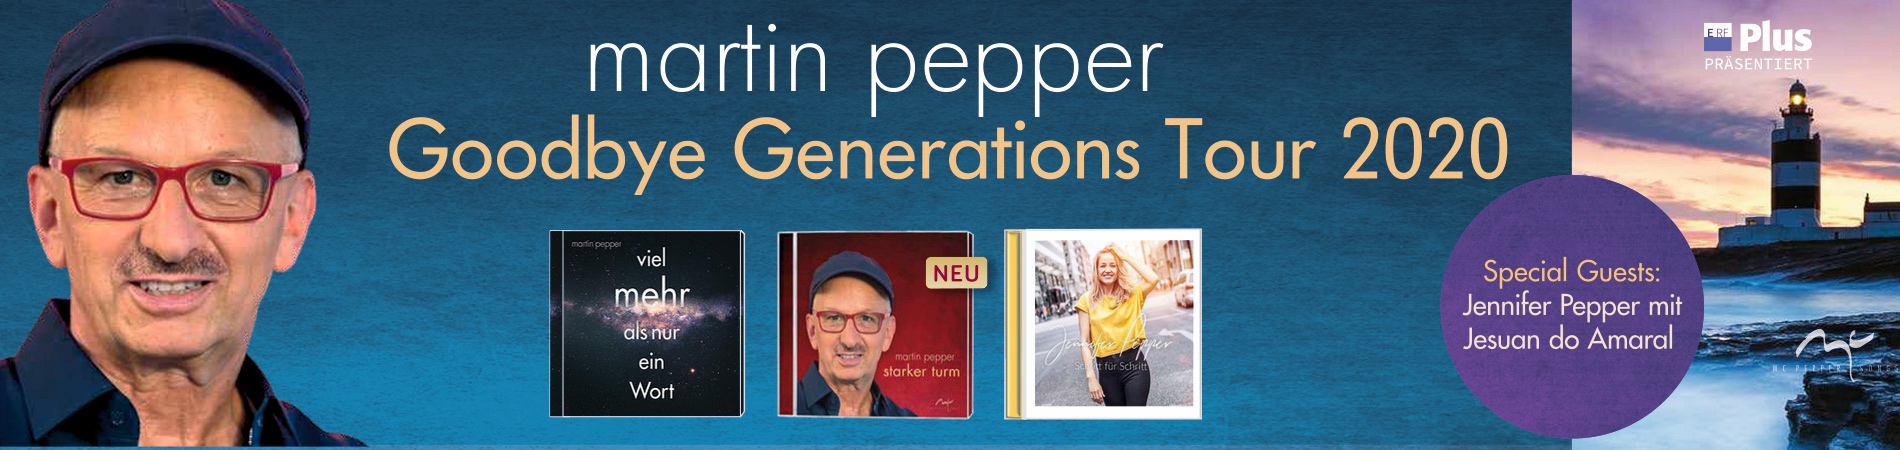 Martin und jennifer pepper gott segne dich akkorde